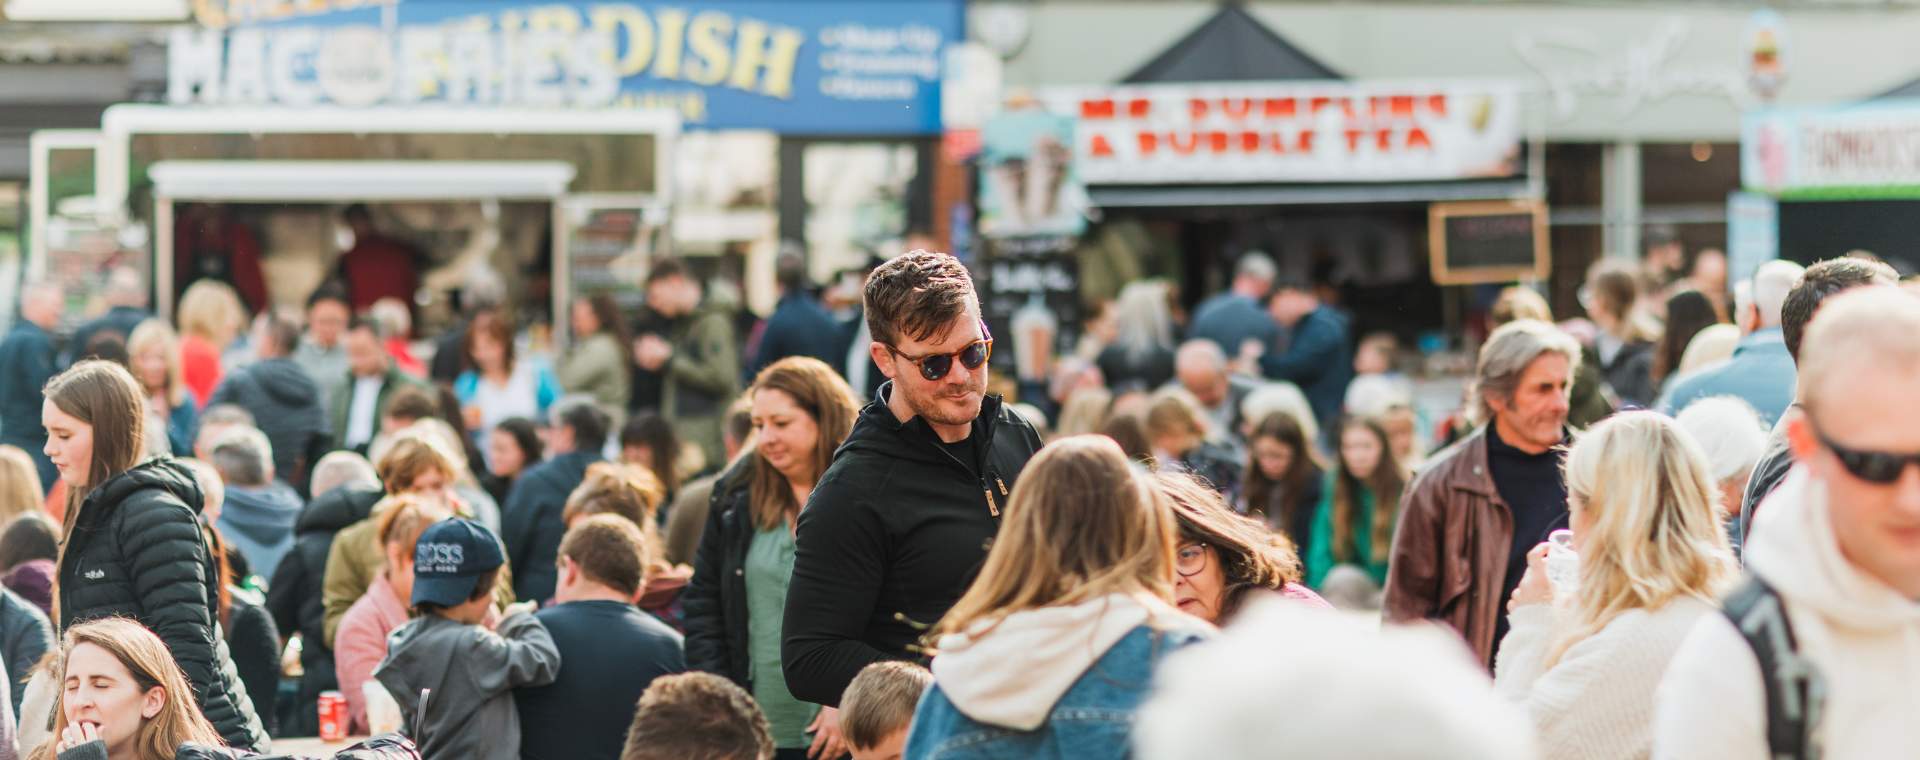 A crowd enjoying a food festival in Pocklington, East Yorkshire